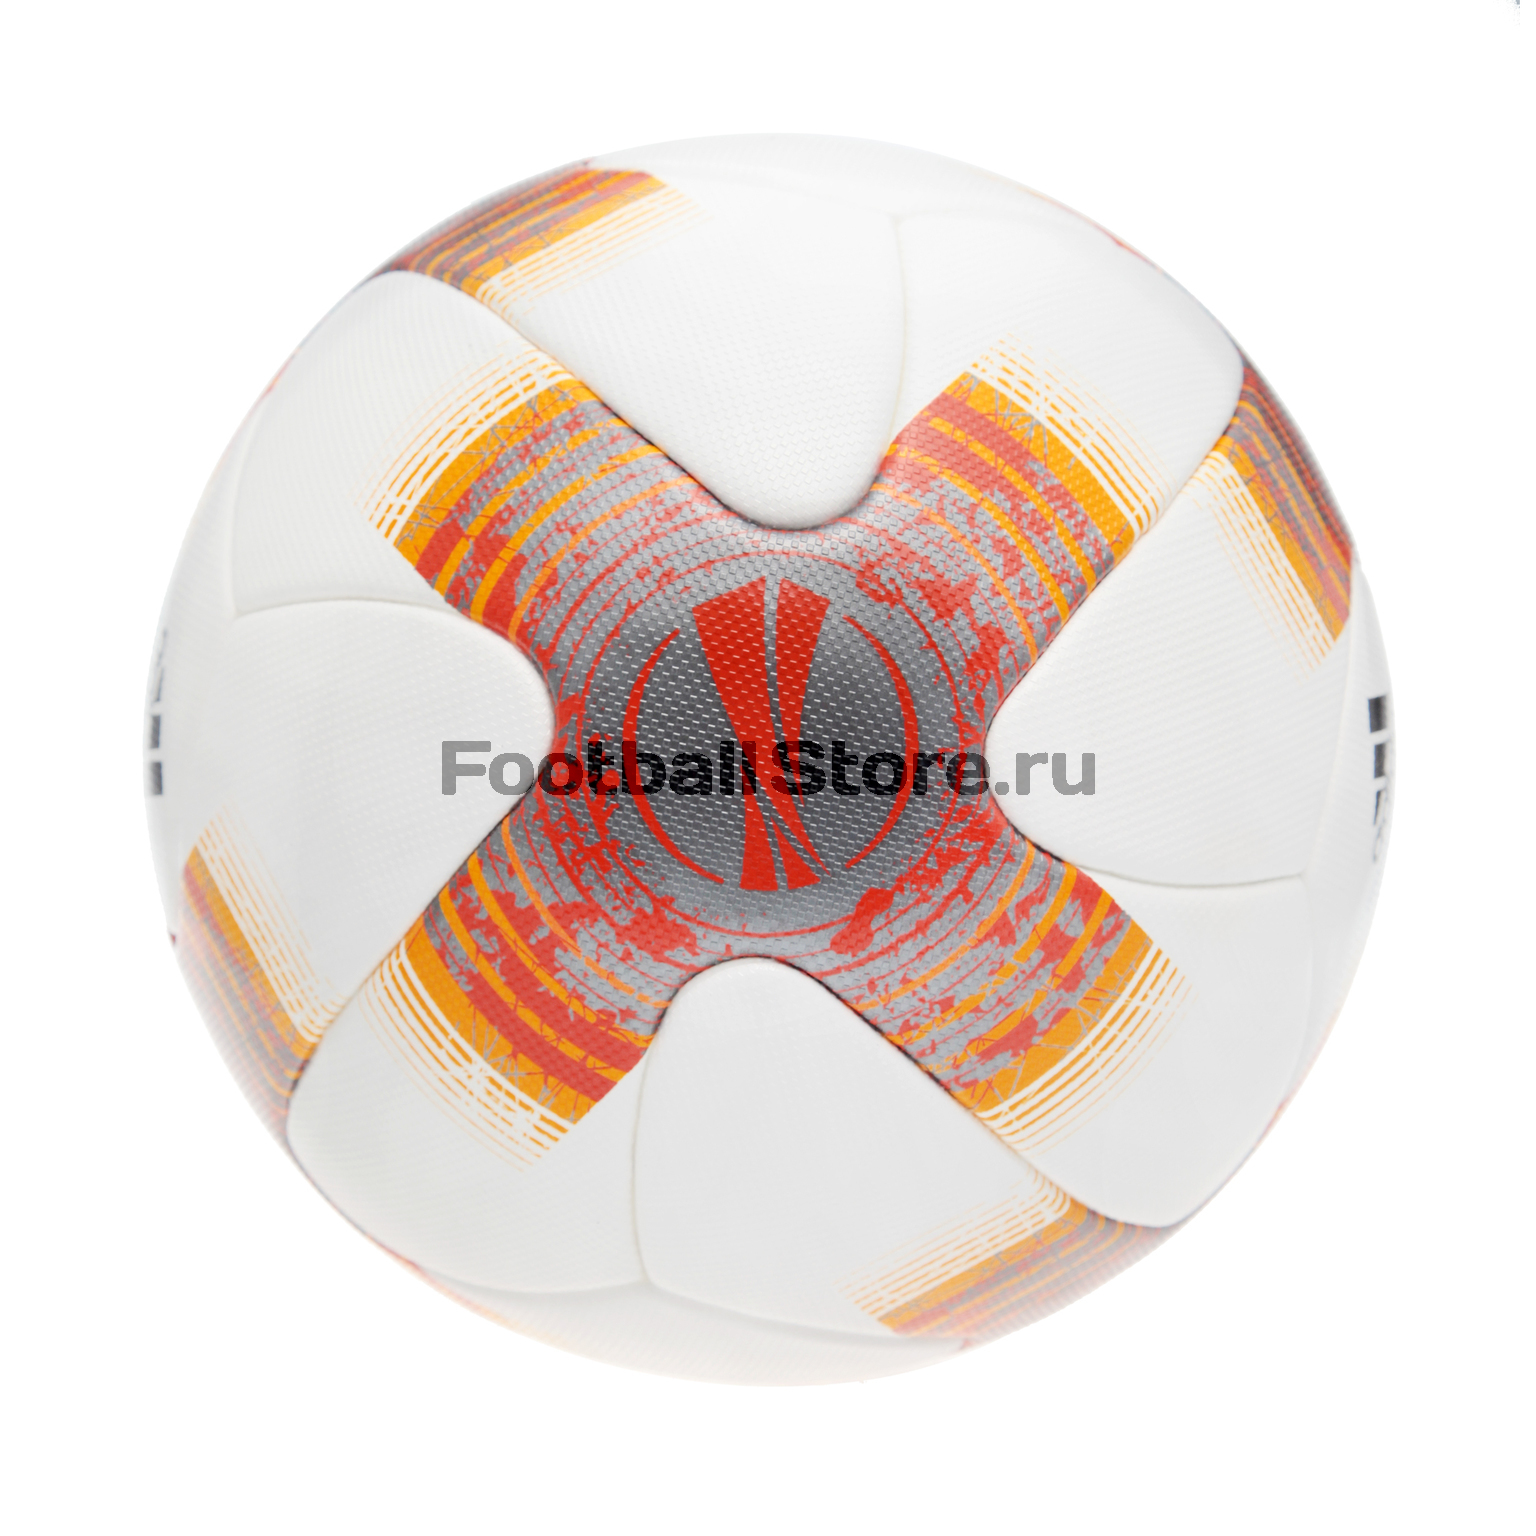 Официальный футбольный мяч Лиги Европы Adidas BQ1874